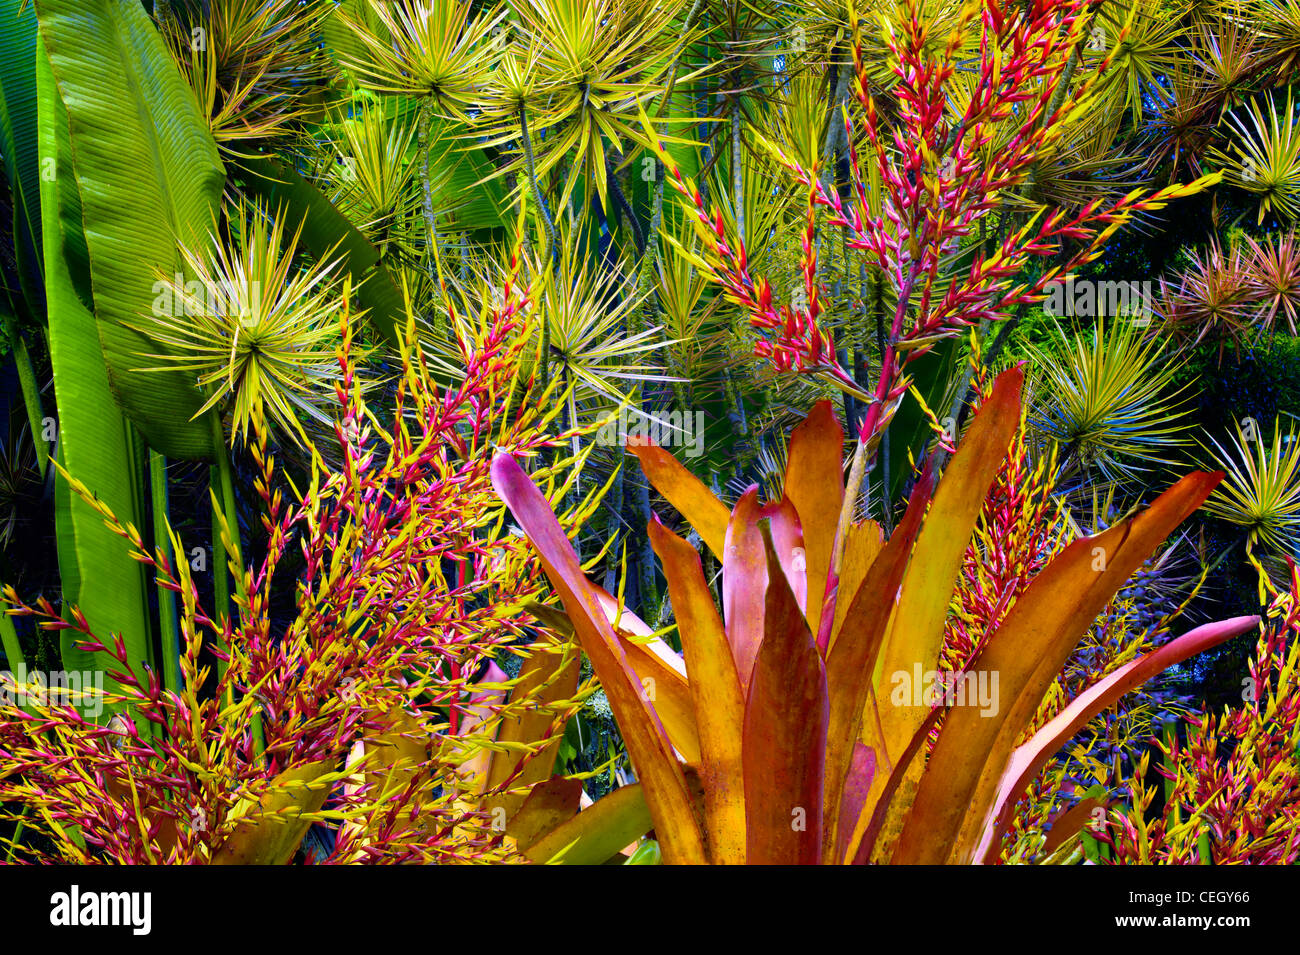 Mixed tropical flora. Hawaii Tropical Botanical Gardens. Hawaii, The Big Island. Stock Photo